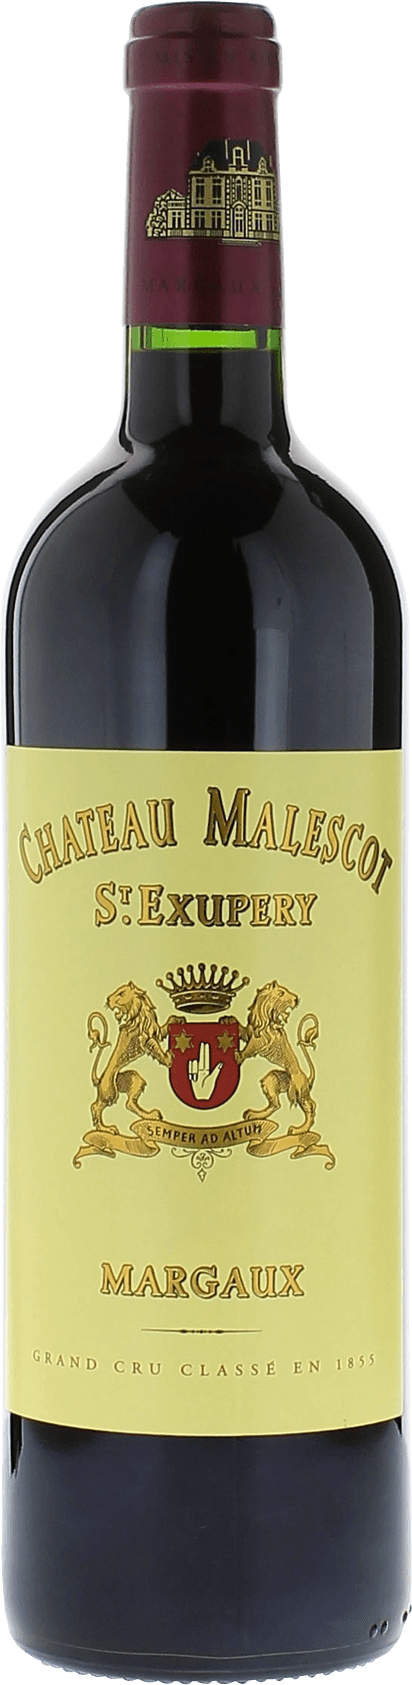 Malescot saint exupery 2016 3me Grand cru class Margaux, Bordeaux rouge